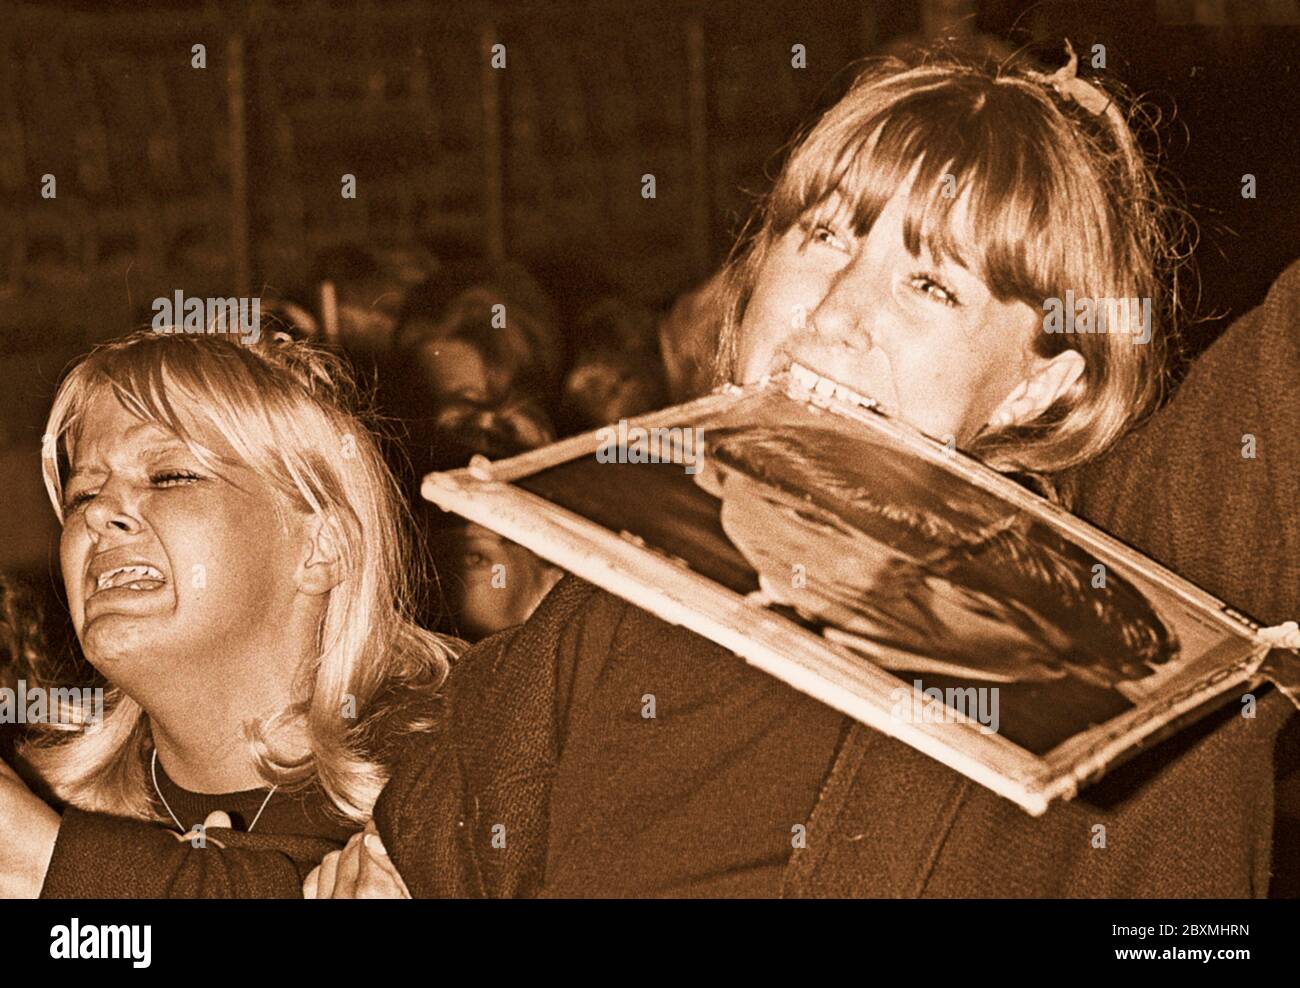 Beatles dans les années 1960. Fans d'un concert des Beatles à Stockholm le 1964 juillet 28 sur le stadion de Johanneshov. Photo d'une scène du concert et de l'auditoire qui est en extacy. La fille à droite tient un portrait de Ringo Starr dans sa bouche. Banque D'Images